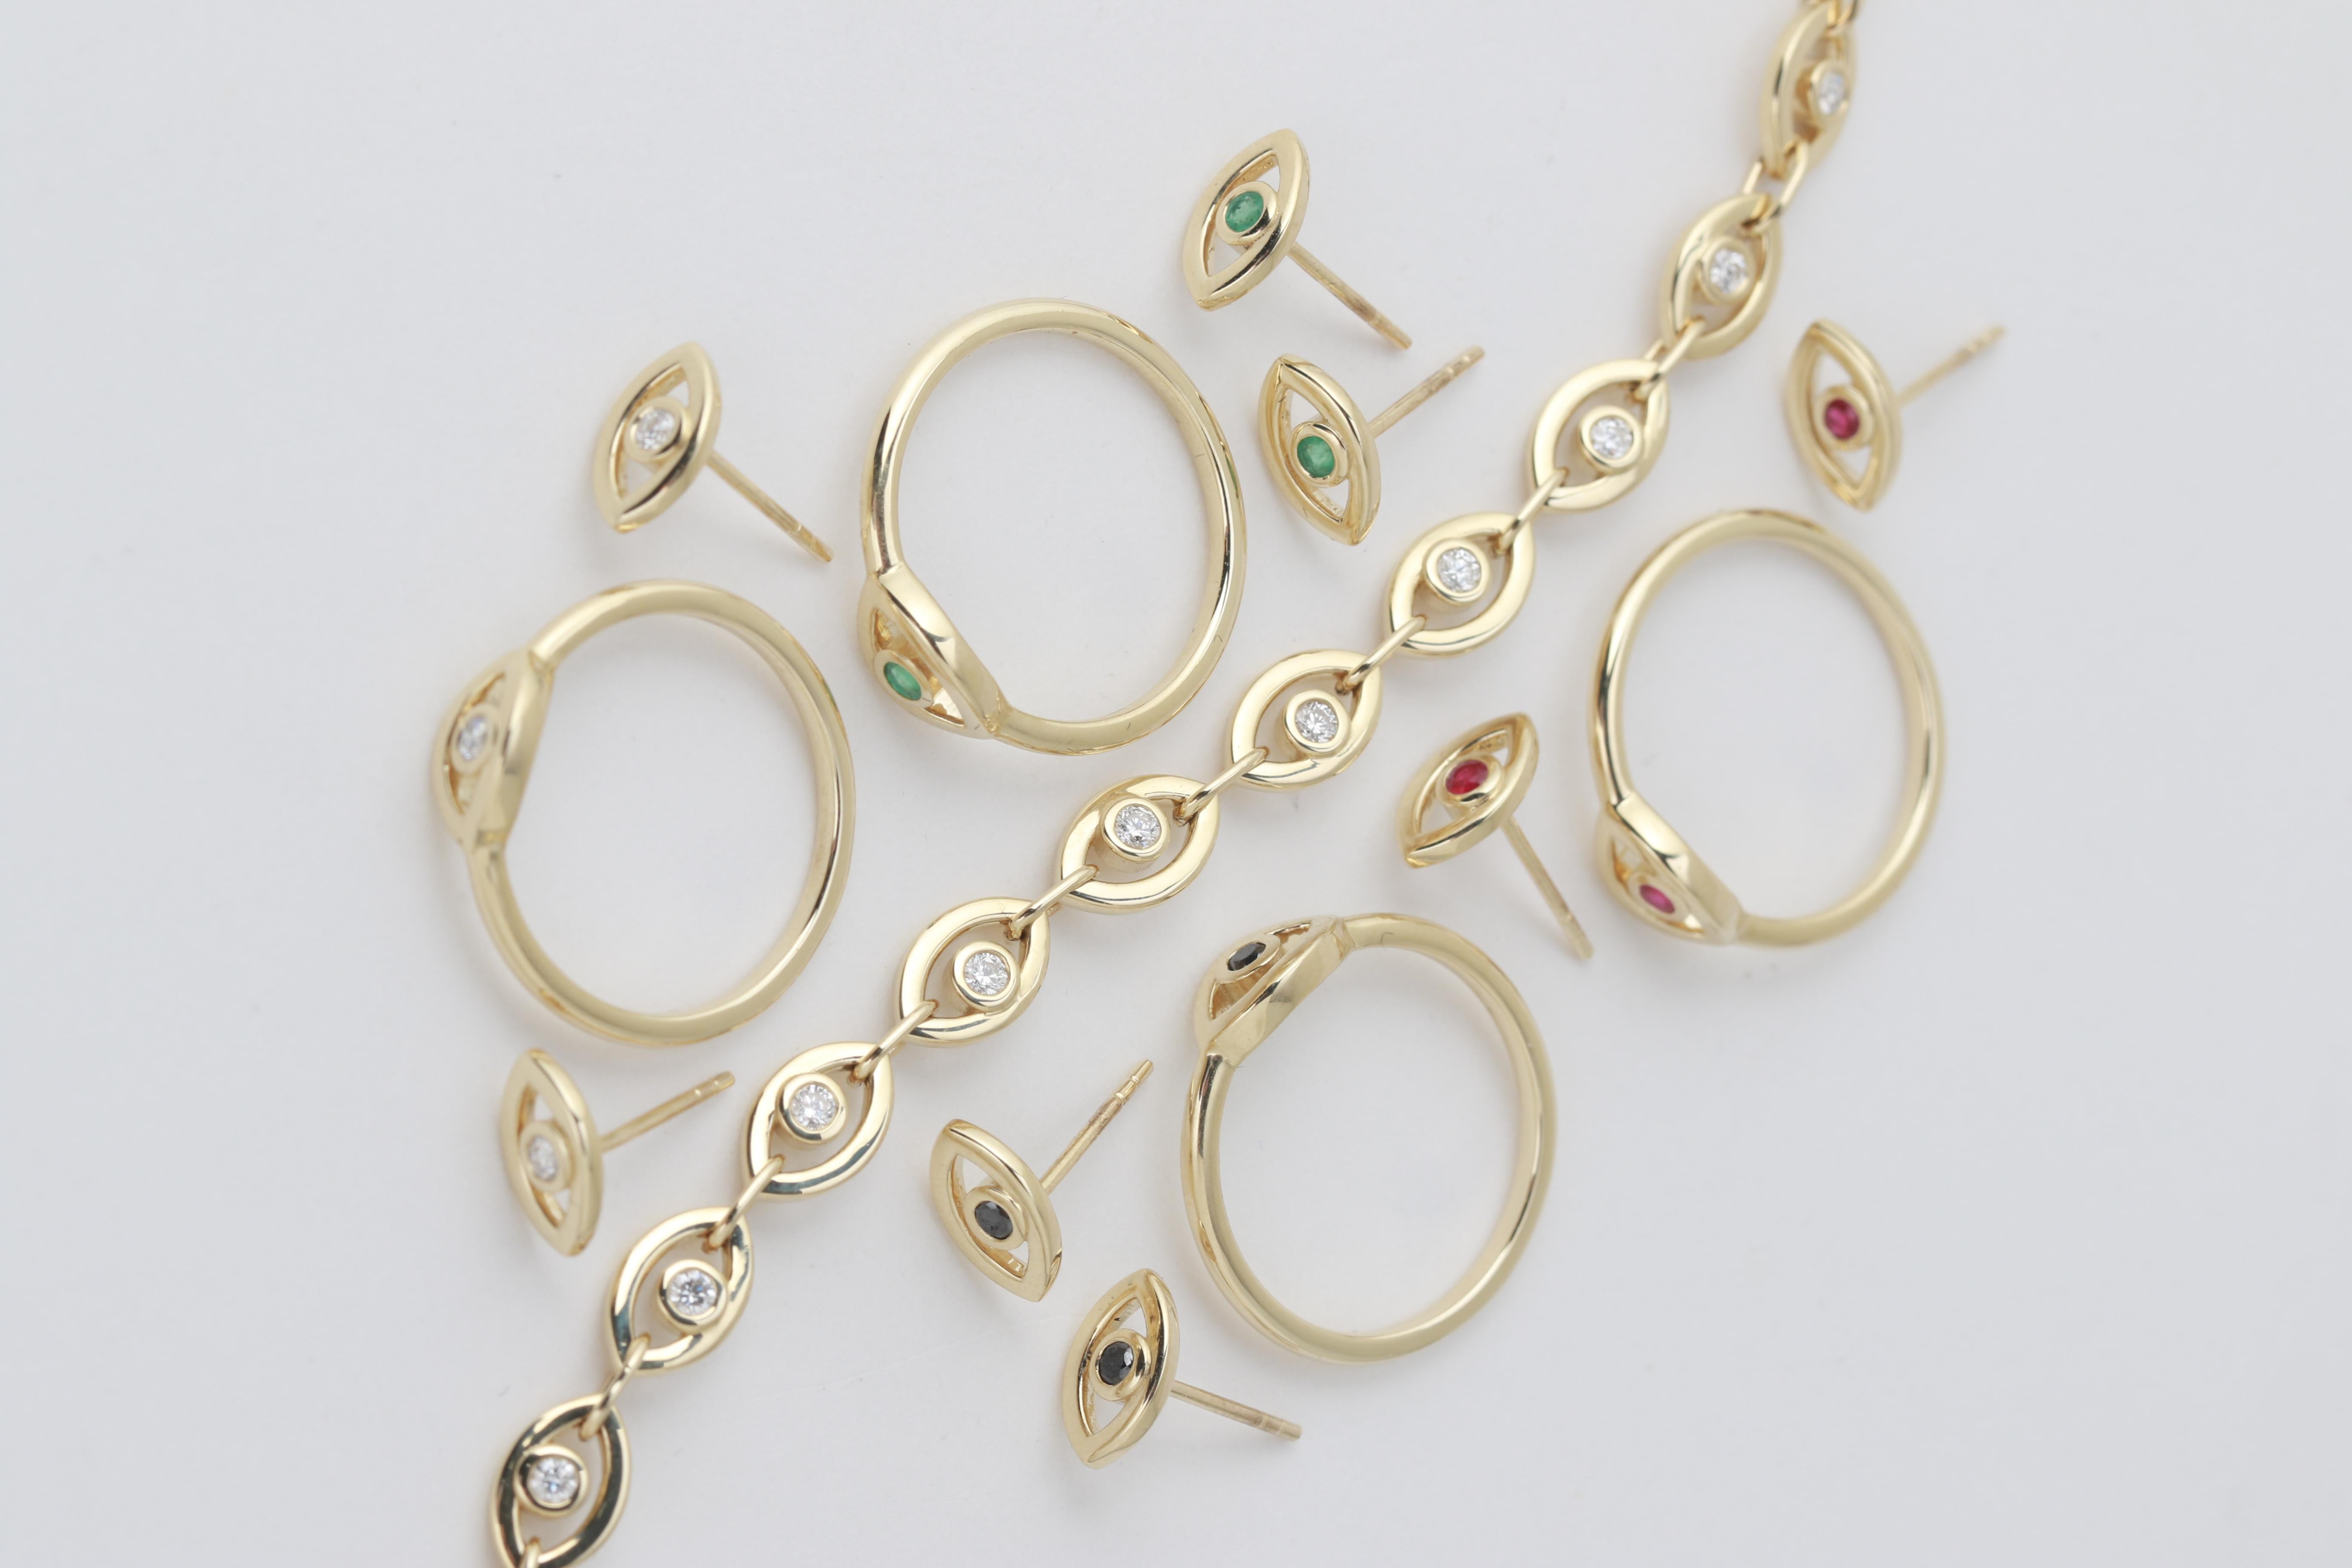 Maillons en forme d'œil, rehaussés de diamants blancs,  se connectent ensemble pour former un joli bracelet de tennis, sécurisé par un fermoir en or.

diamants blancs, 0,53 carats au total